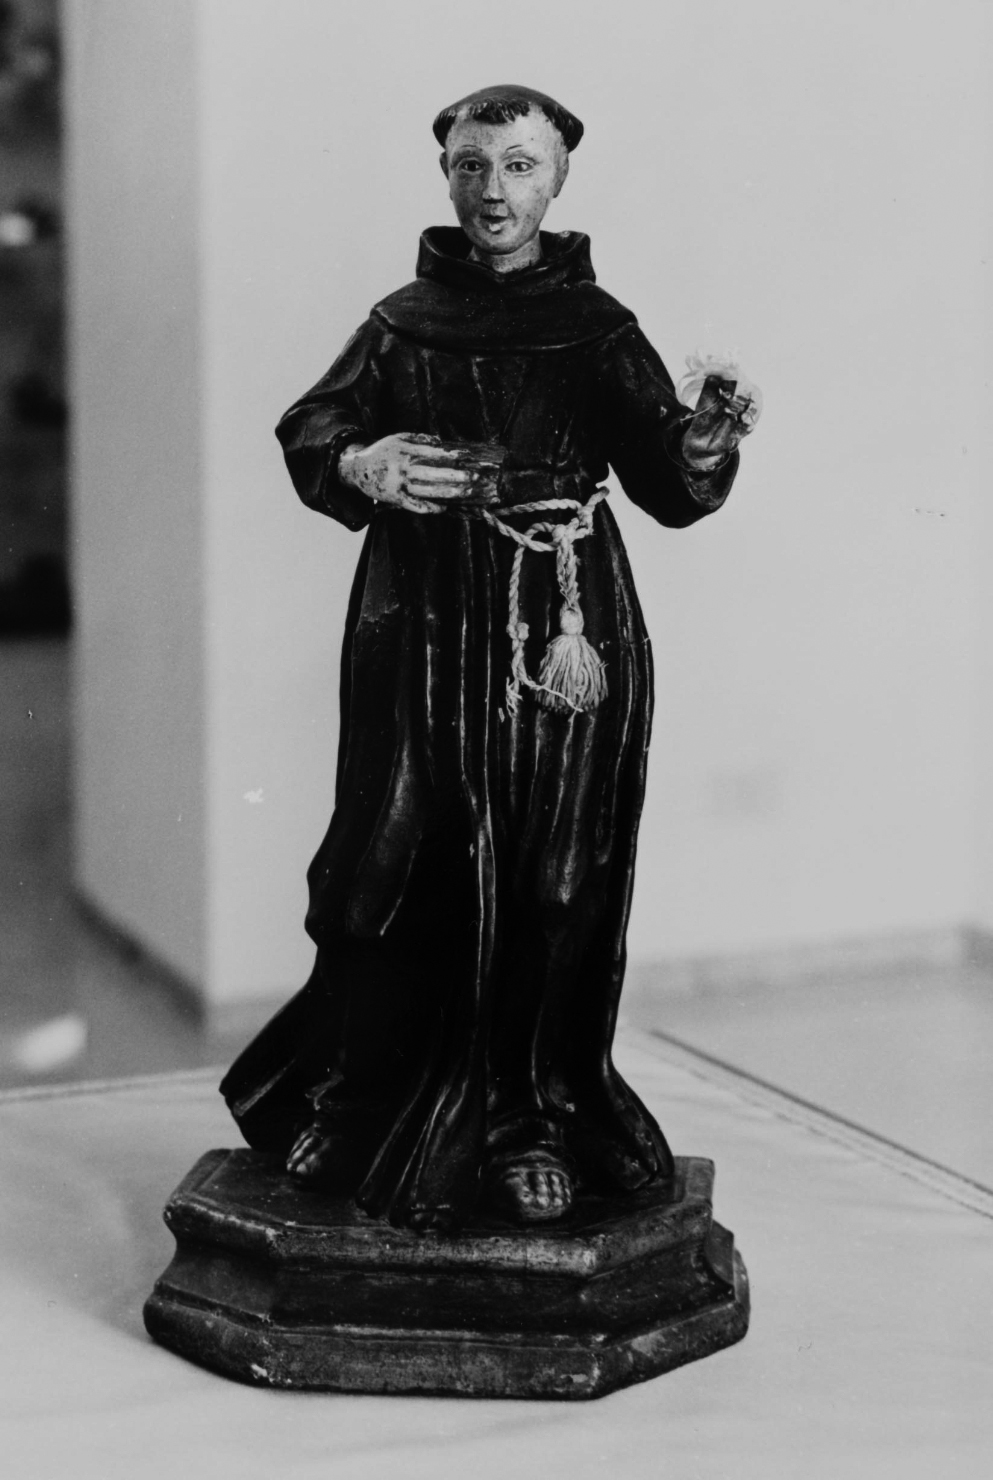 Sant'antonio da padova (statua)